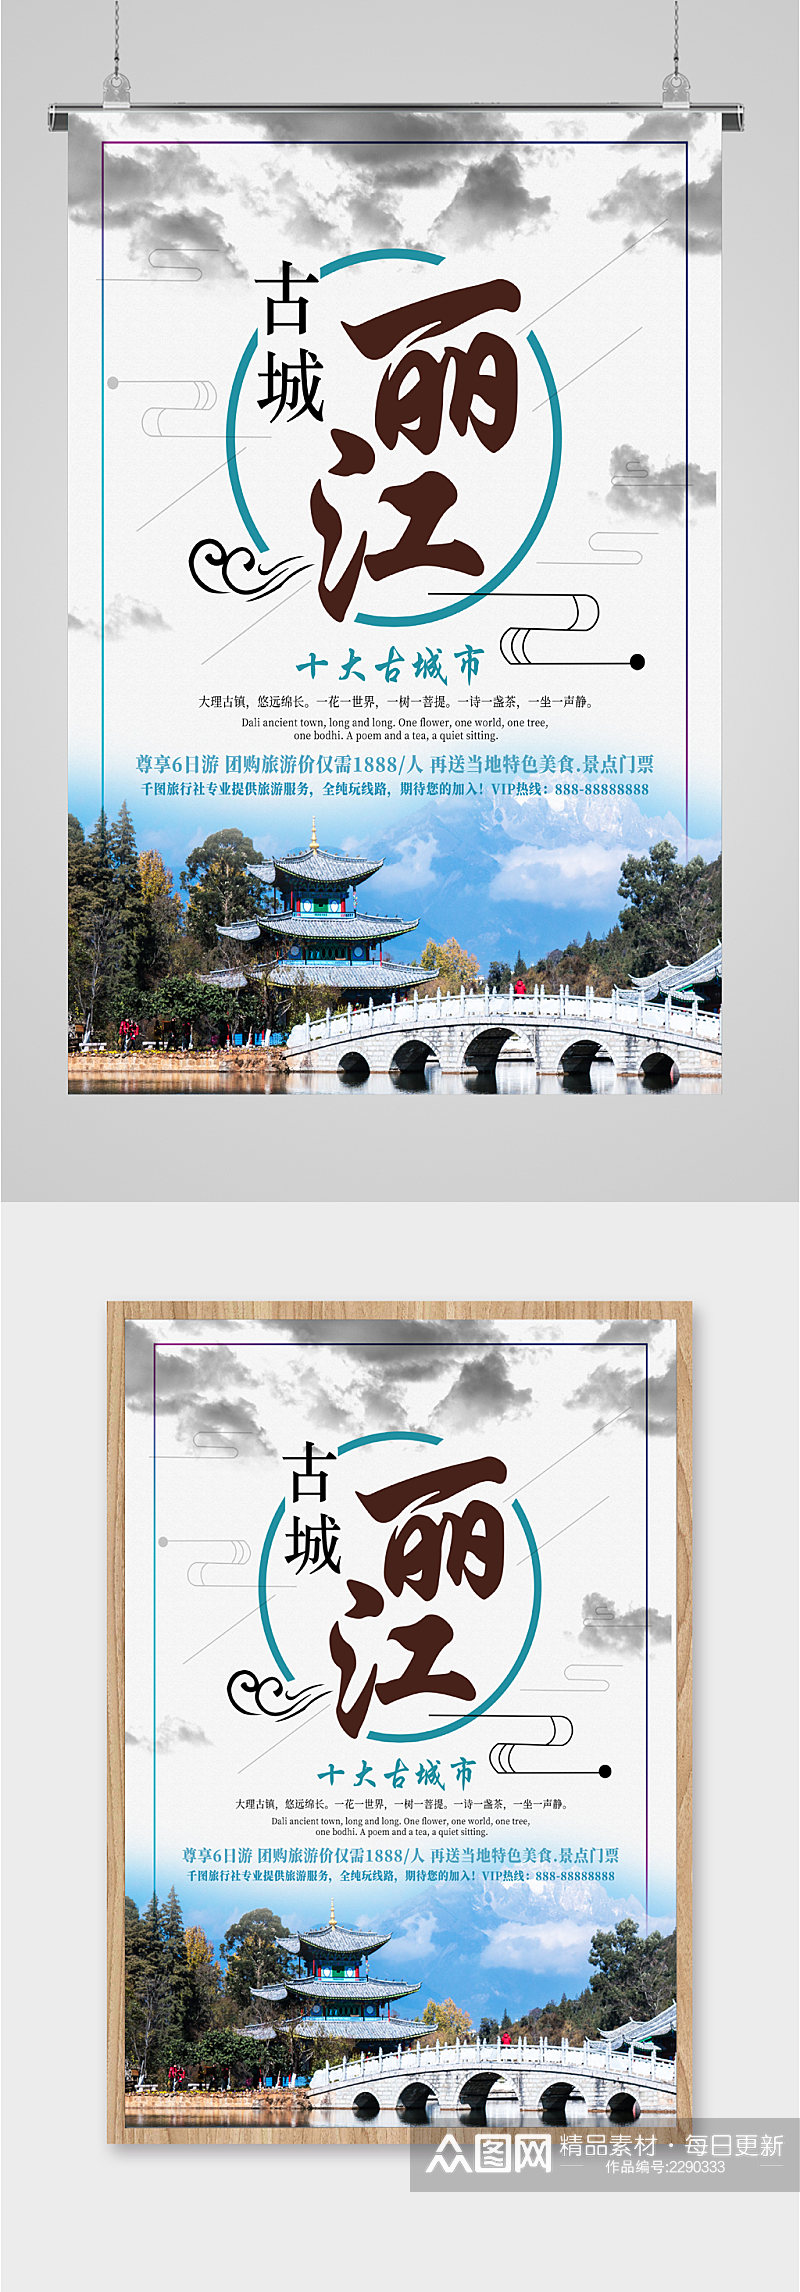 古城丽江旅游特价海报素材